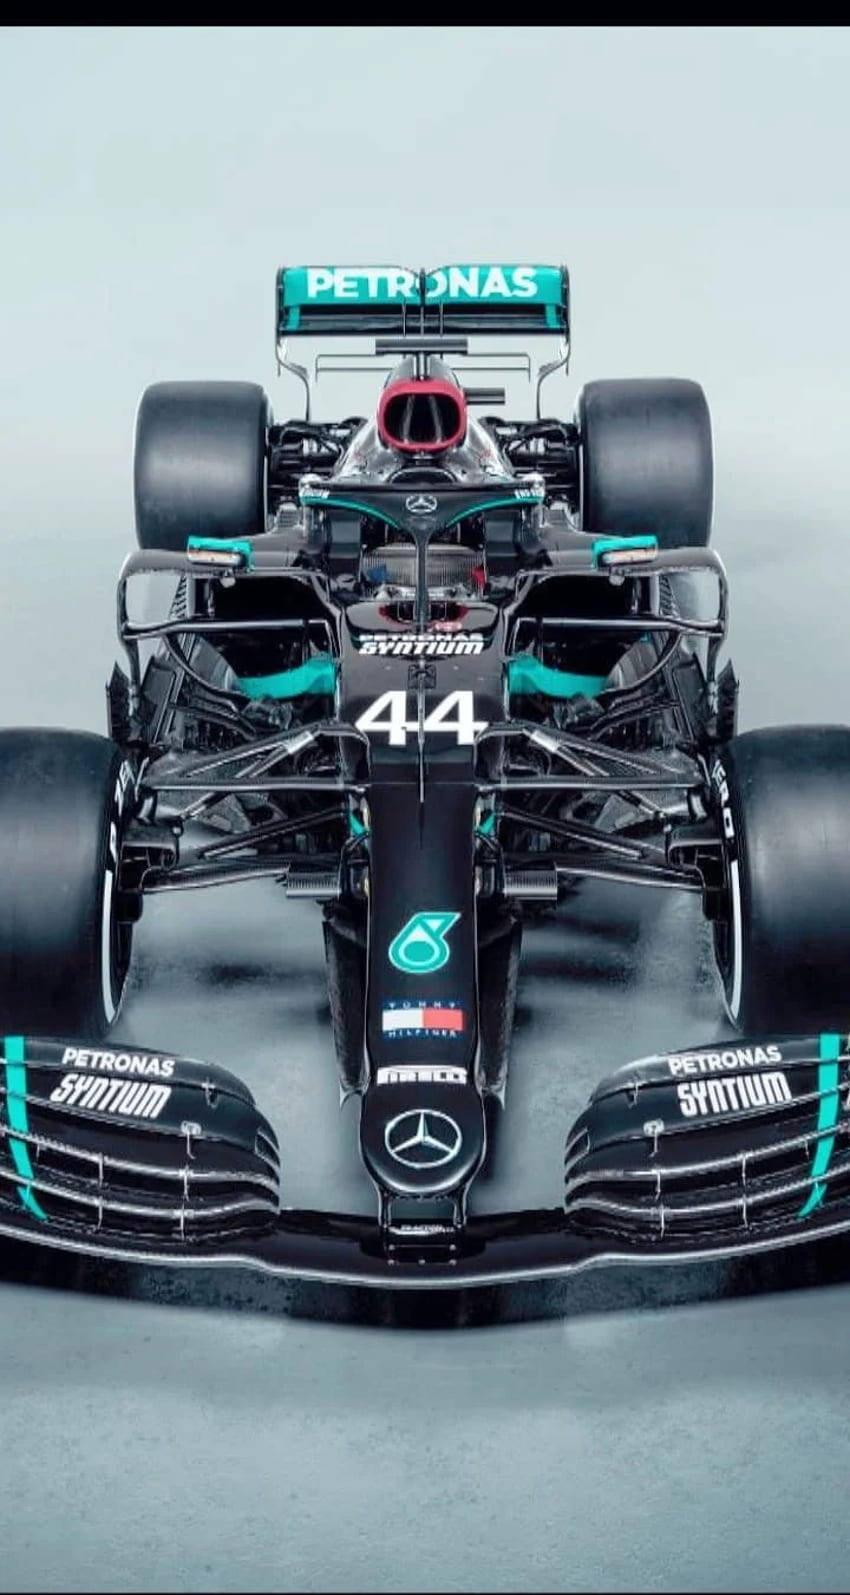 Lewishamilton Dominerar 2019 F1 Mästerskapet. Wallpaper